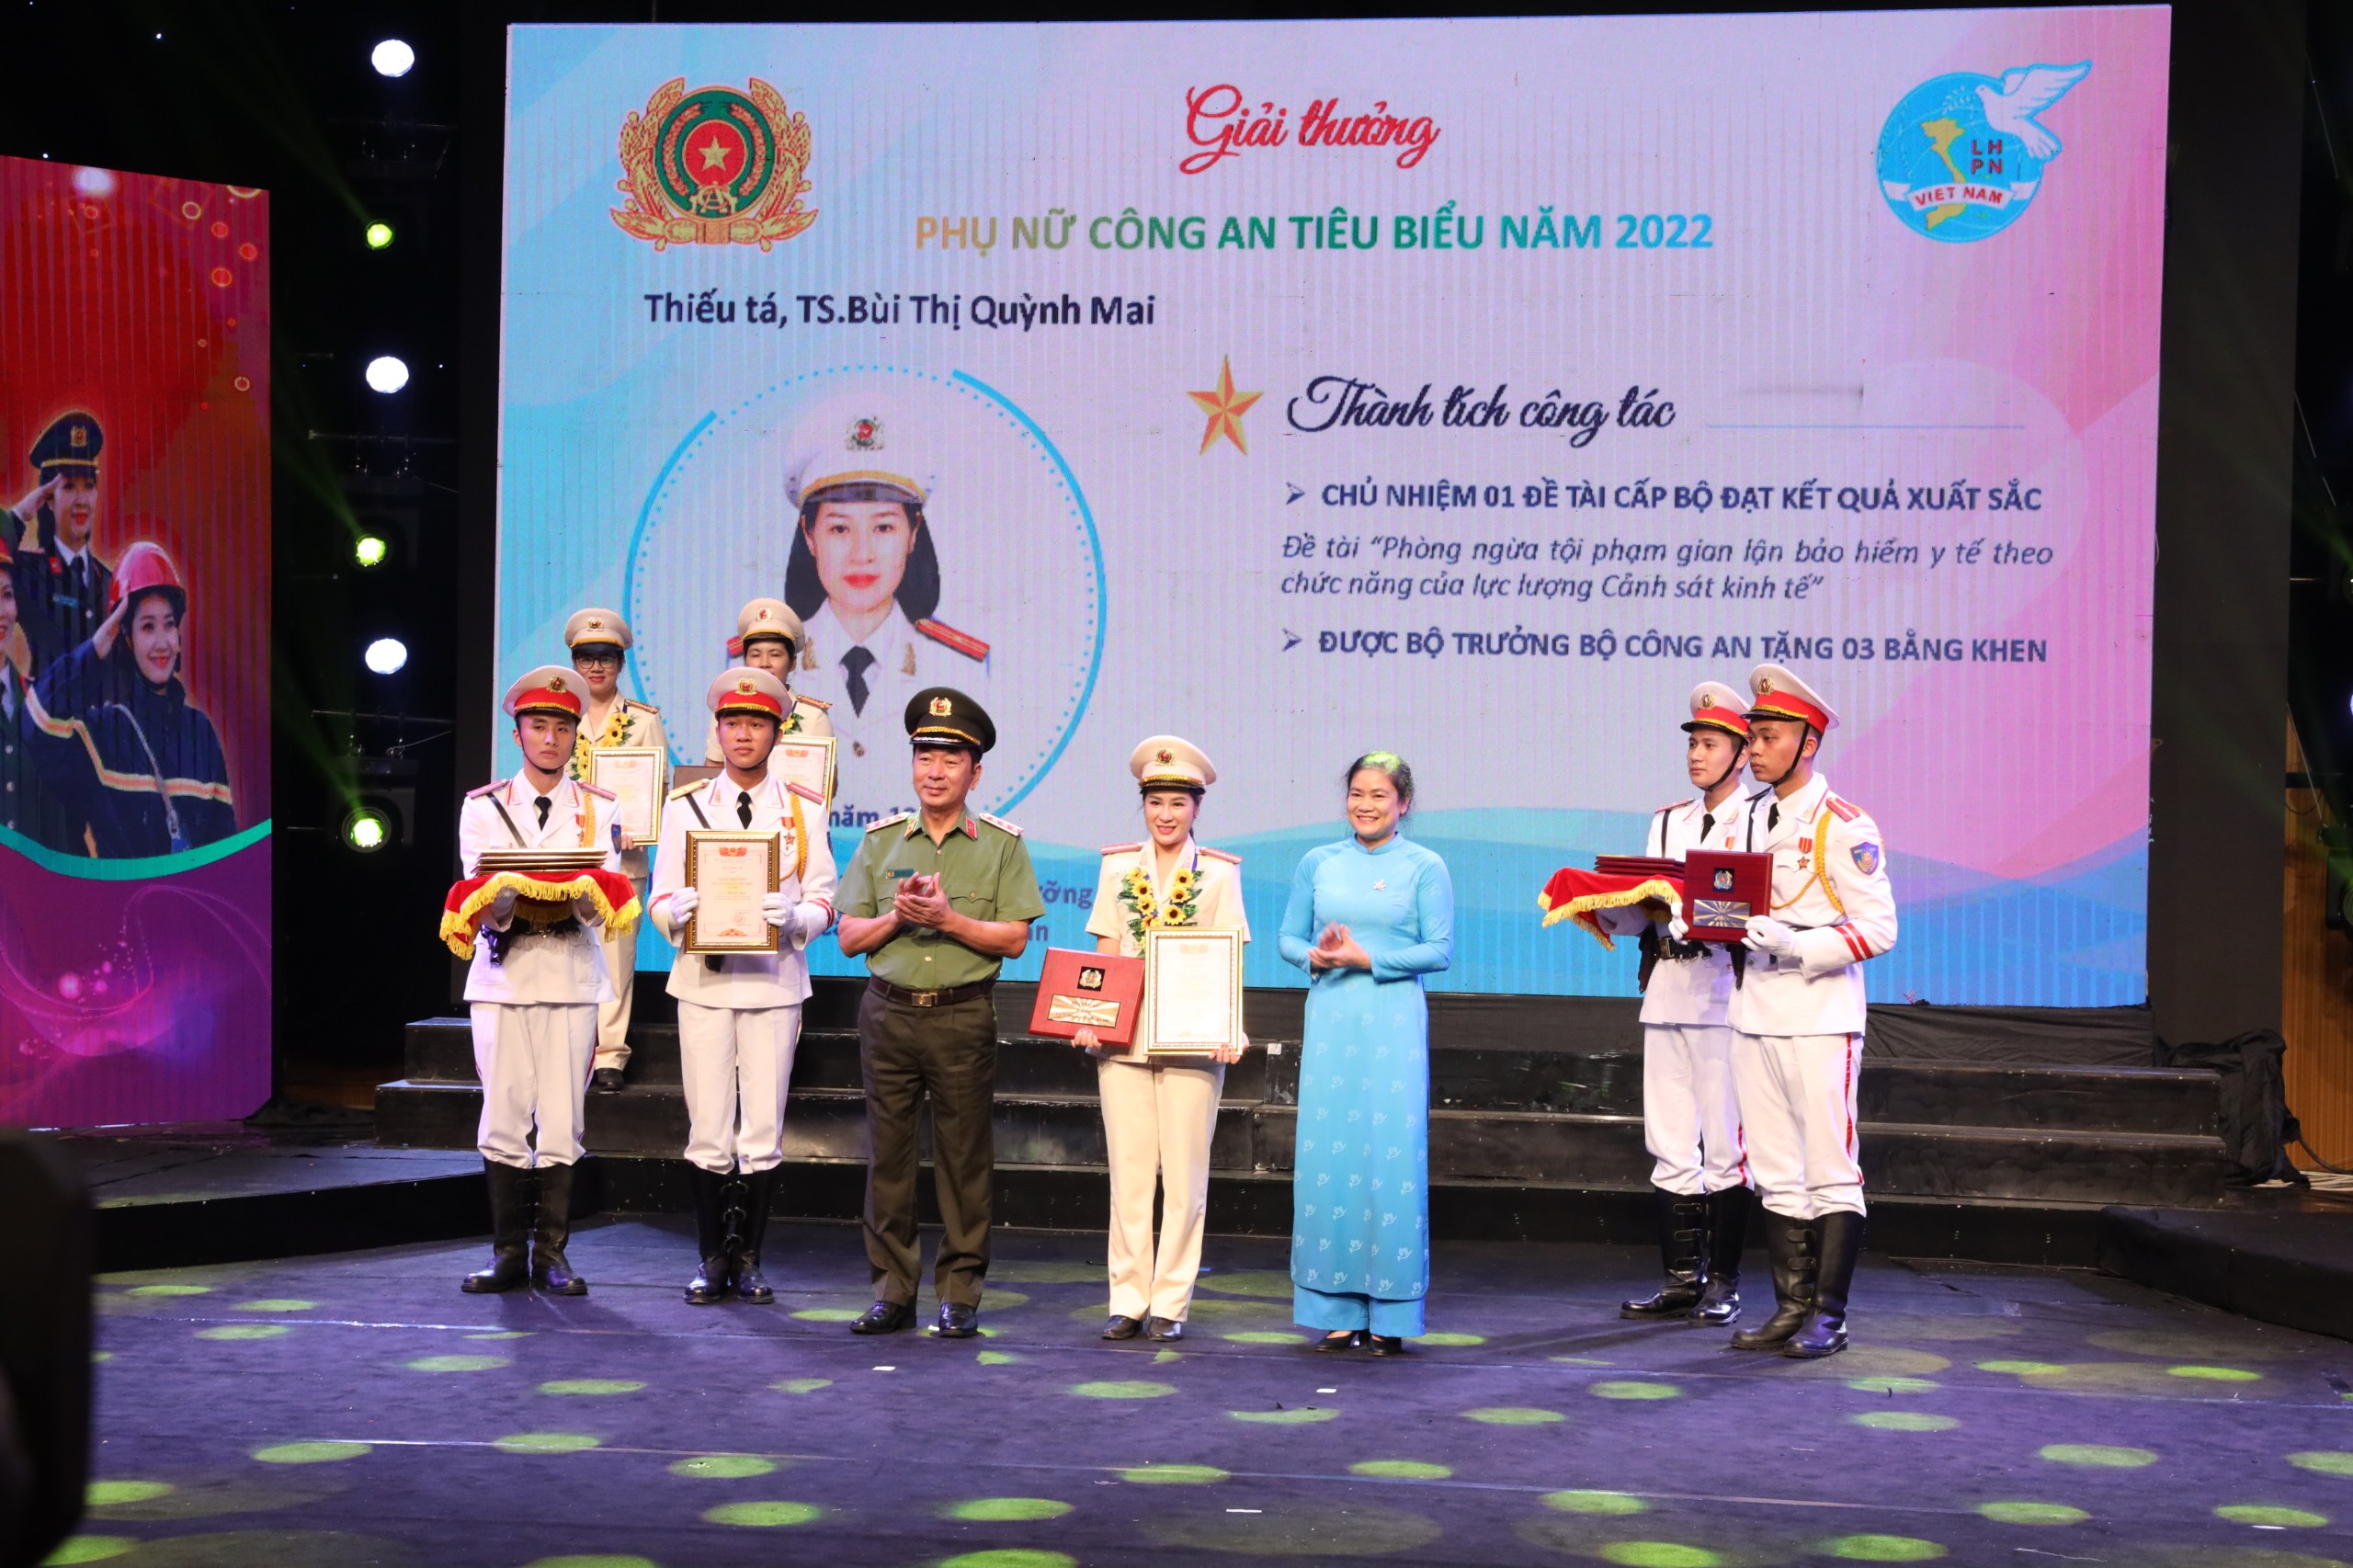 Thiếu tá, TS. Bùi Thị Quỳnh Mai, Phòng Quản lý đào tạo và bồi dưỡng nâng cao được tuyên dương "Phụ nữ Công an tiêu biểu" năm 2022